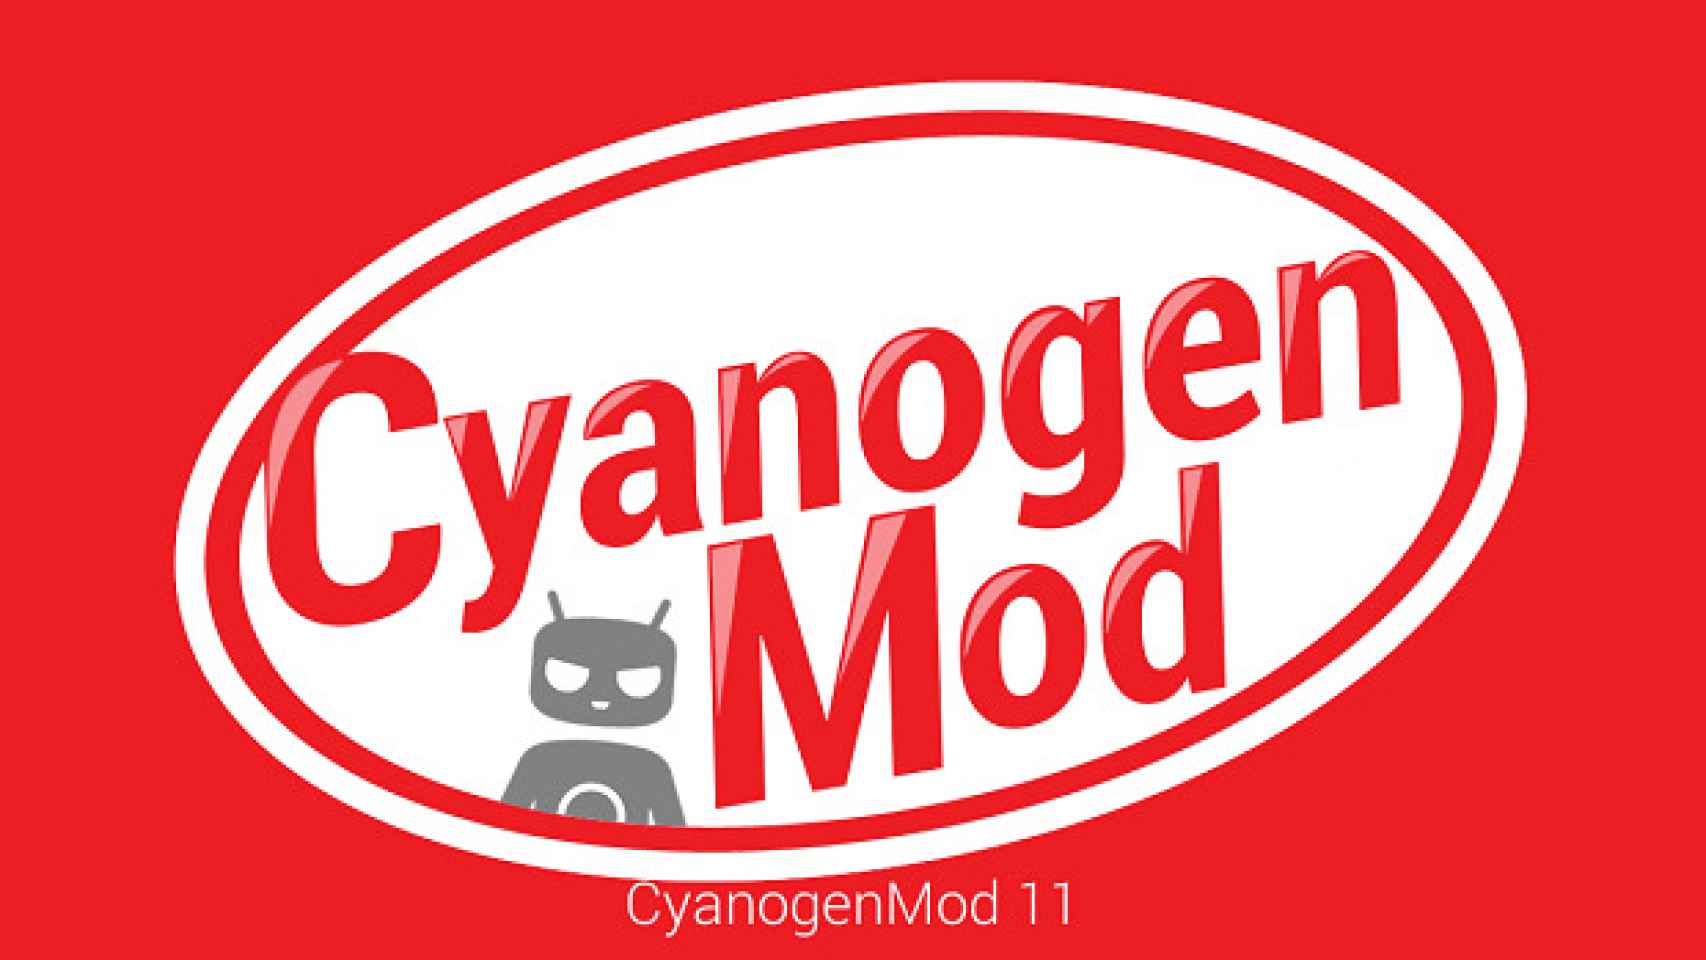 CyanogenMod 11 basado en Android 4.4.3 ya disponible